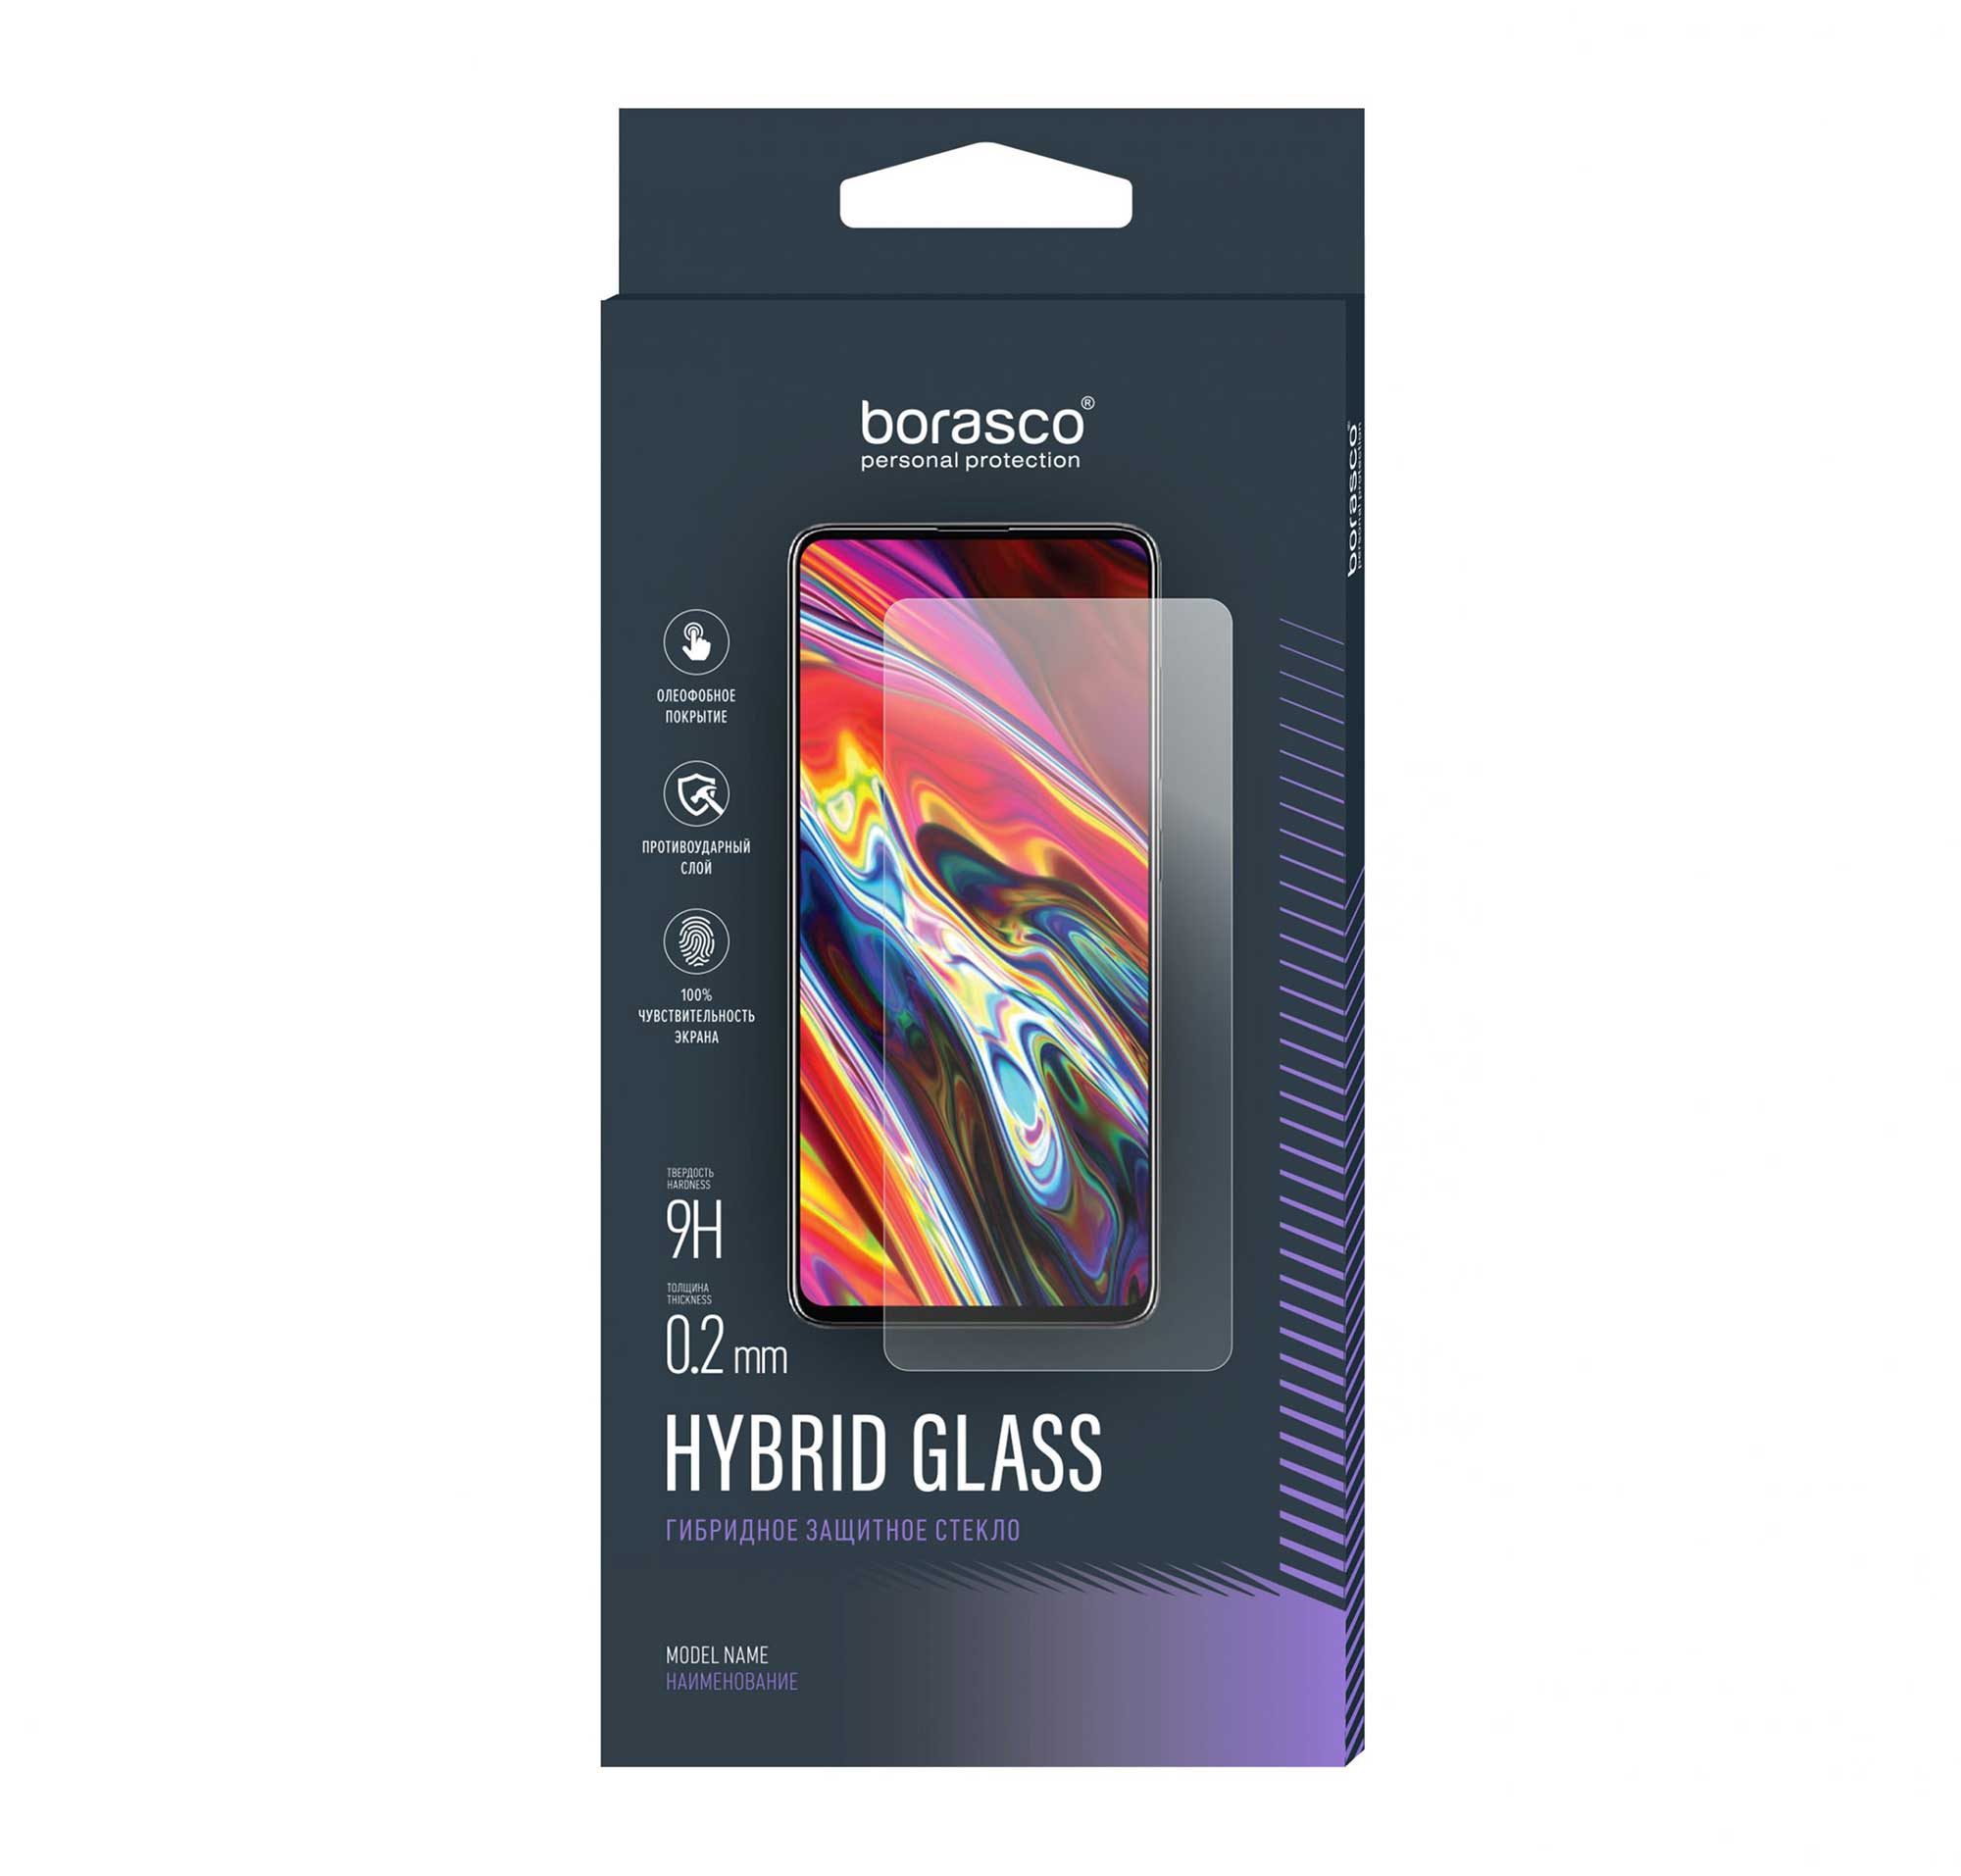 Защитное стекло BoraSCO Hybrid Glass для Nokia G21 чехол mypads крутой попкорн для nokia g11 g21 задняя панель накладка бампер